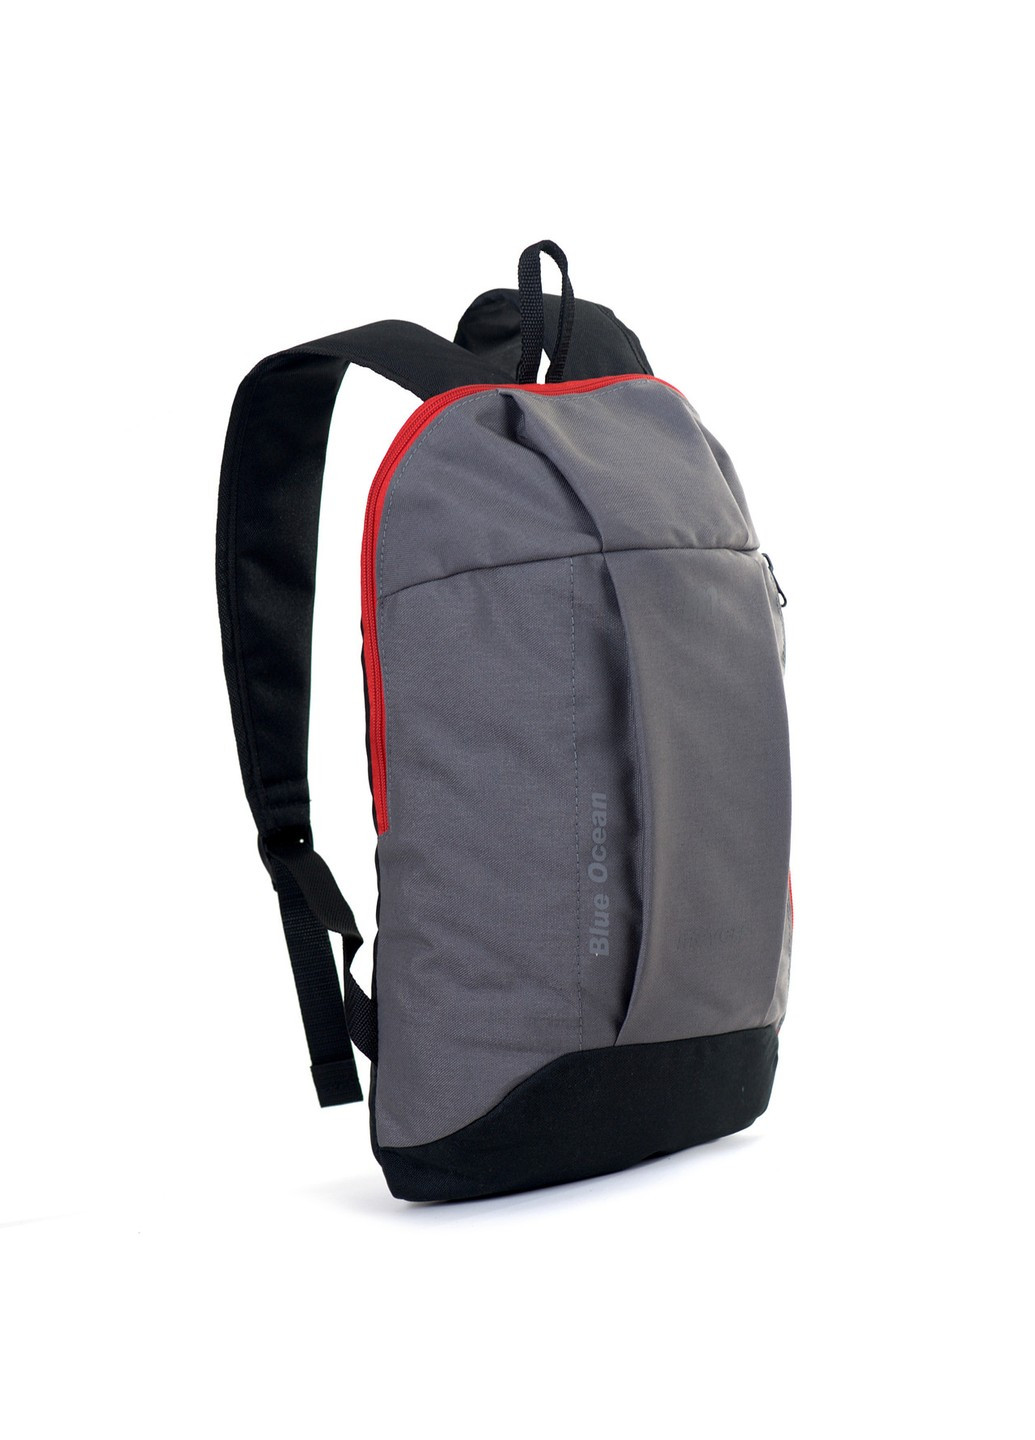 Универсальный серый молодежный практичный рюкзак с черным дном и спинкой водонепроницаемый спортивный No Brand (258591278)